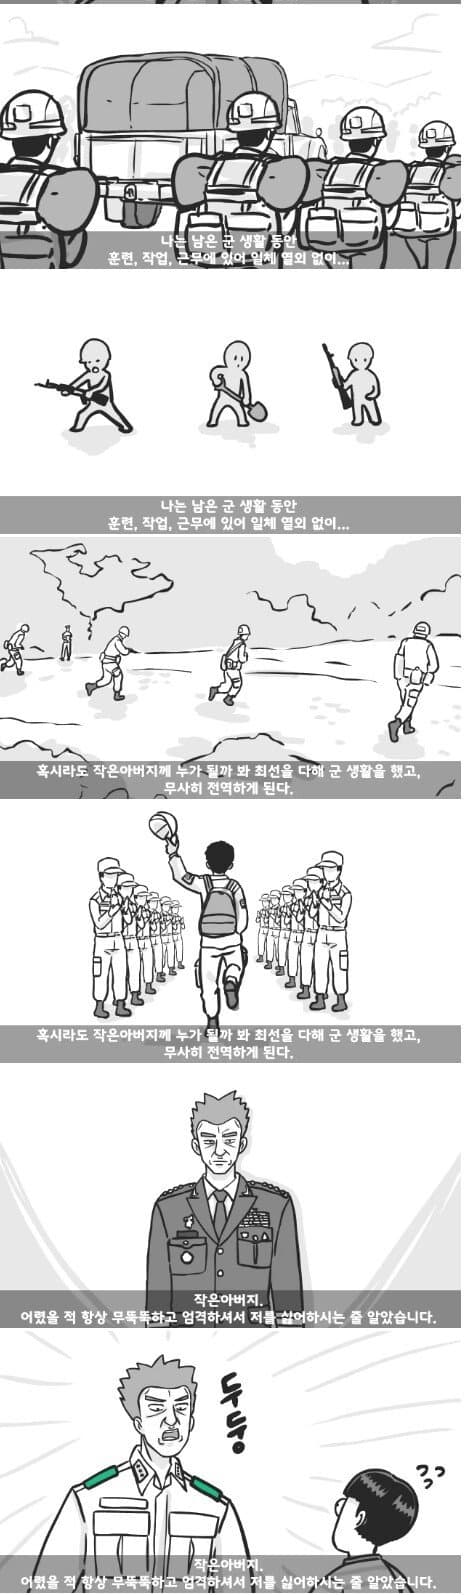 군대 4스타인 만화 29.jpg